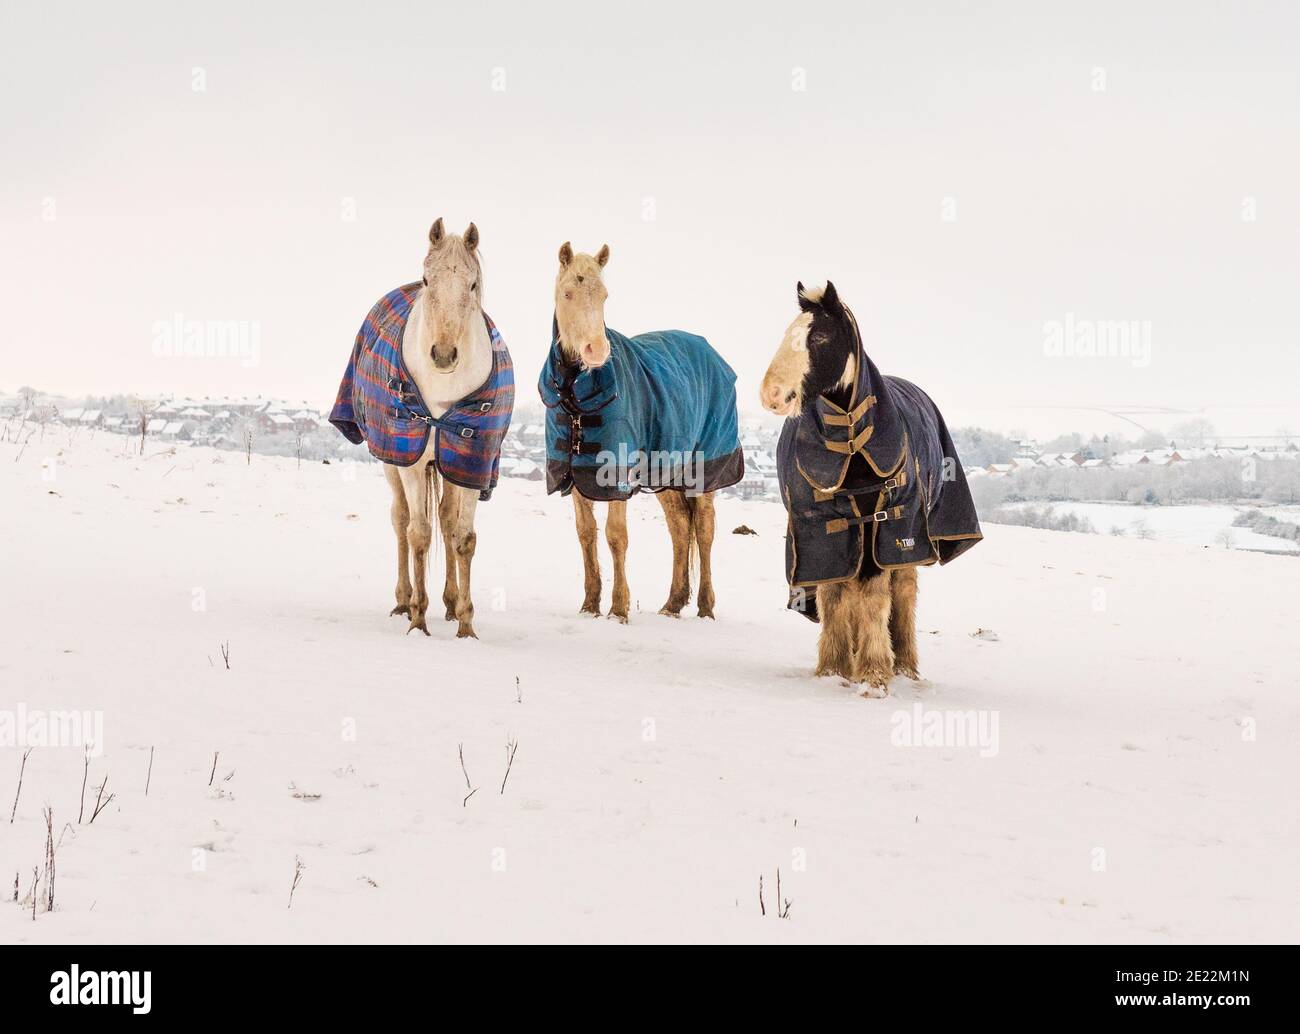 Drei alte Pferde bei kaltem Wetter. Alle sind ältere Stuten, die in einem schneebedeckten Feld grasen und Wintermantel gegen die Kälte tragen. Stockfoto